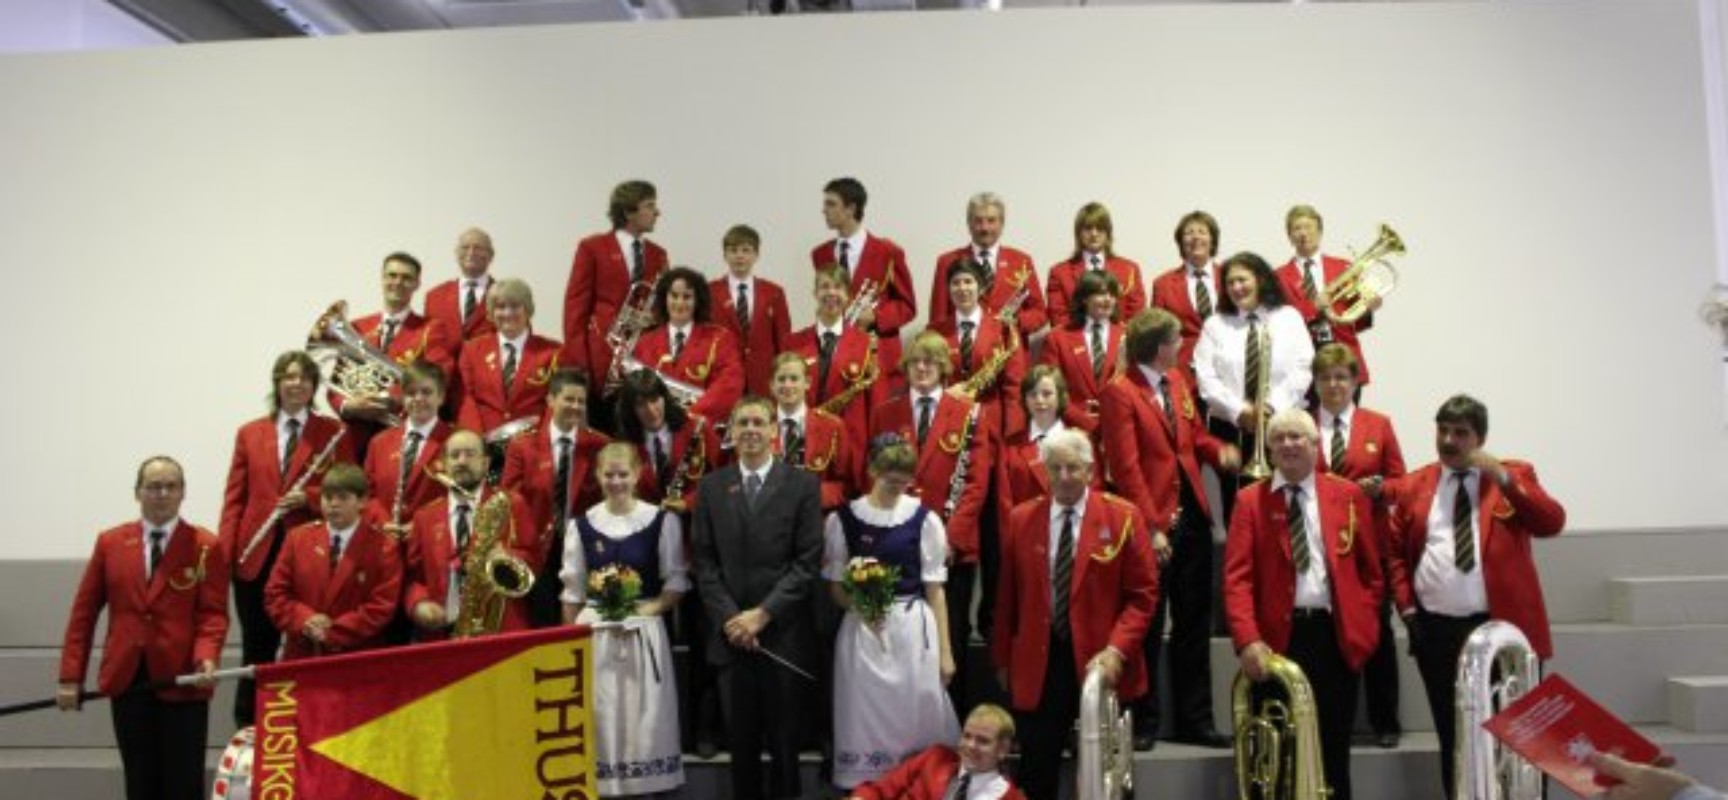 General-Versammlung der Musik-Gesellschaft Thusis